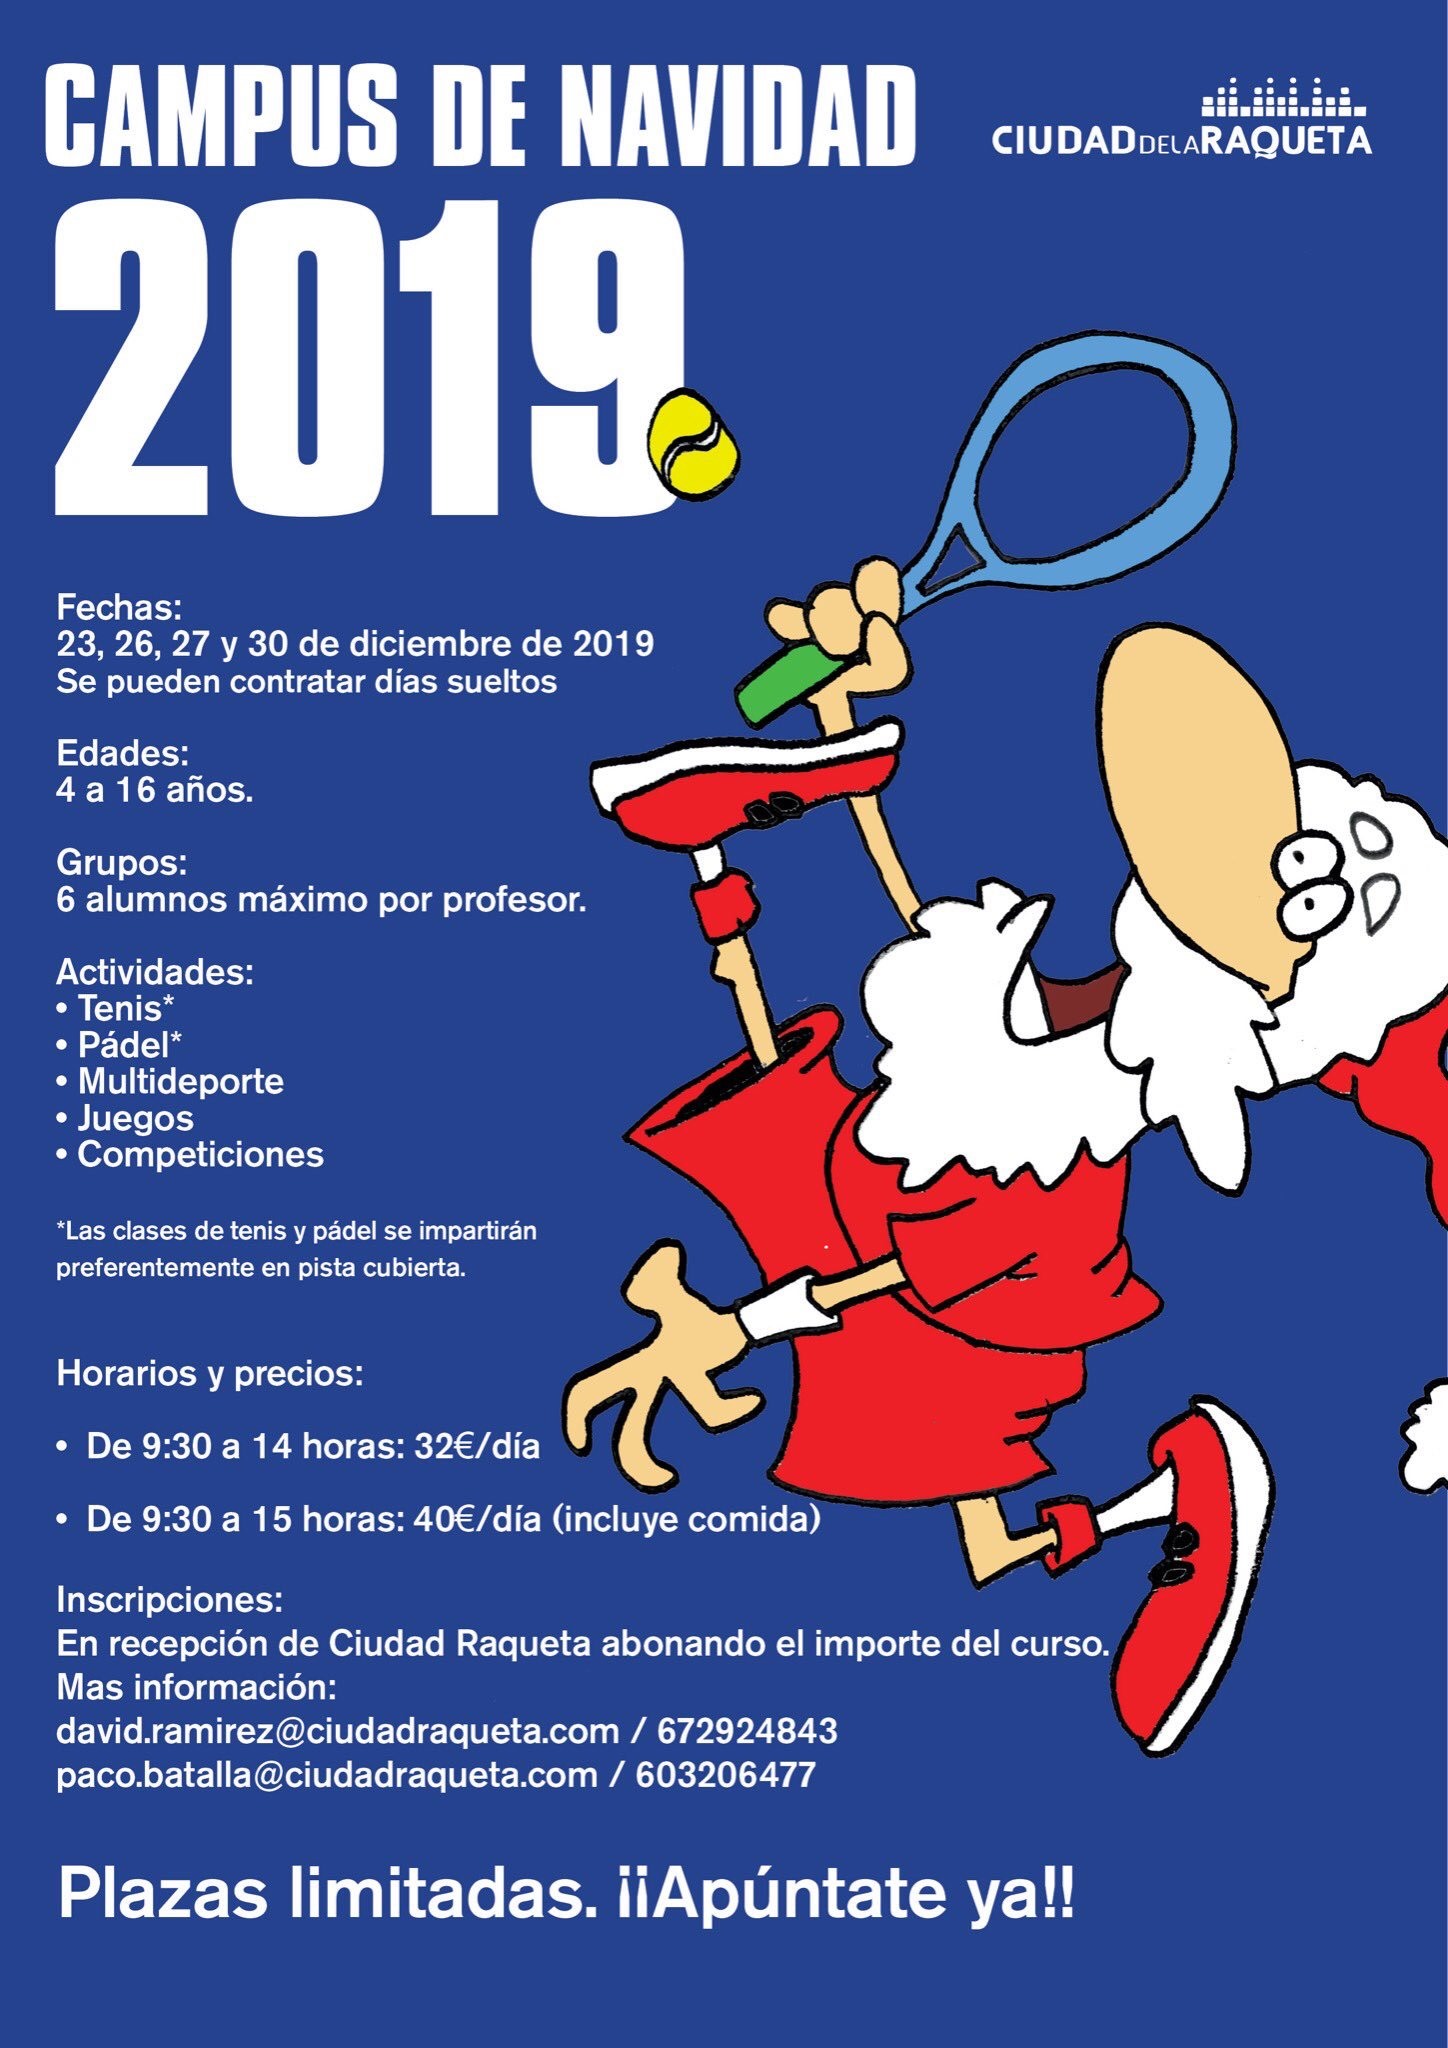 Campus Navidad Ciudad de la Raqueta 2019